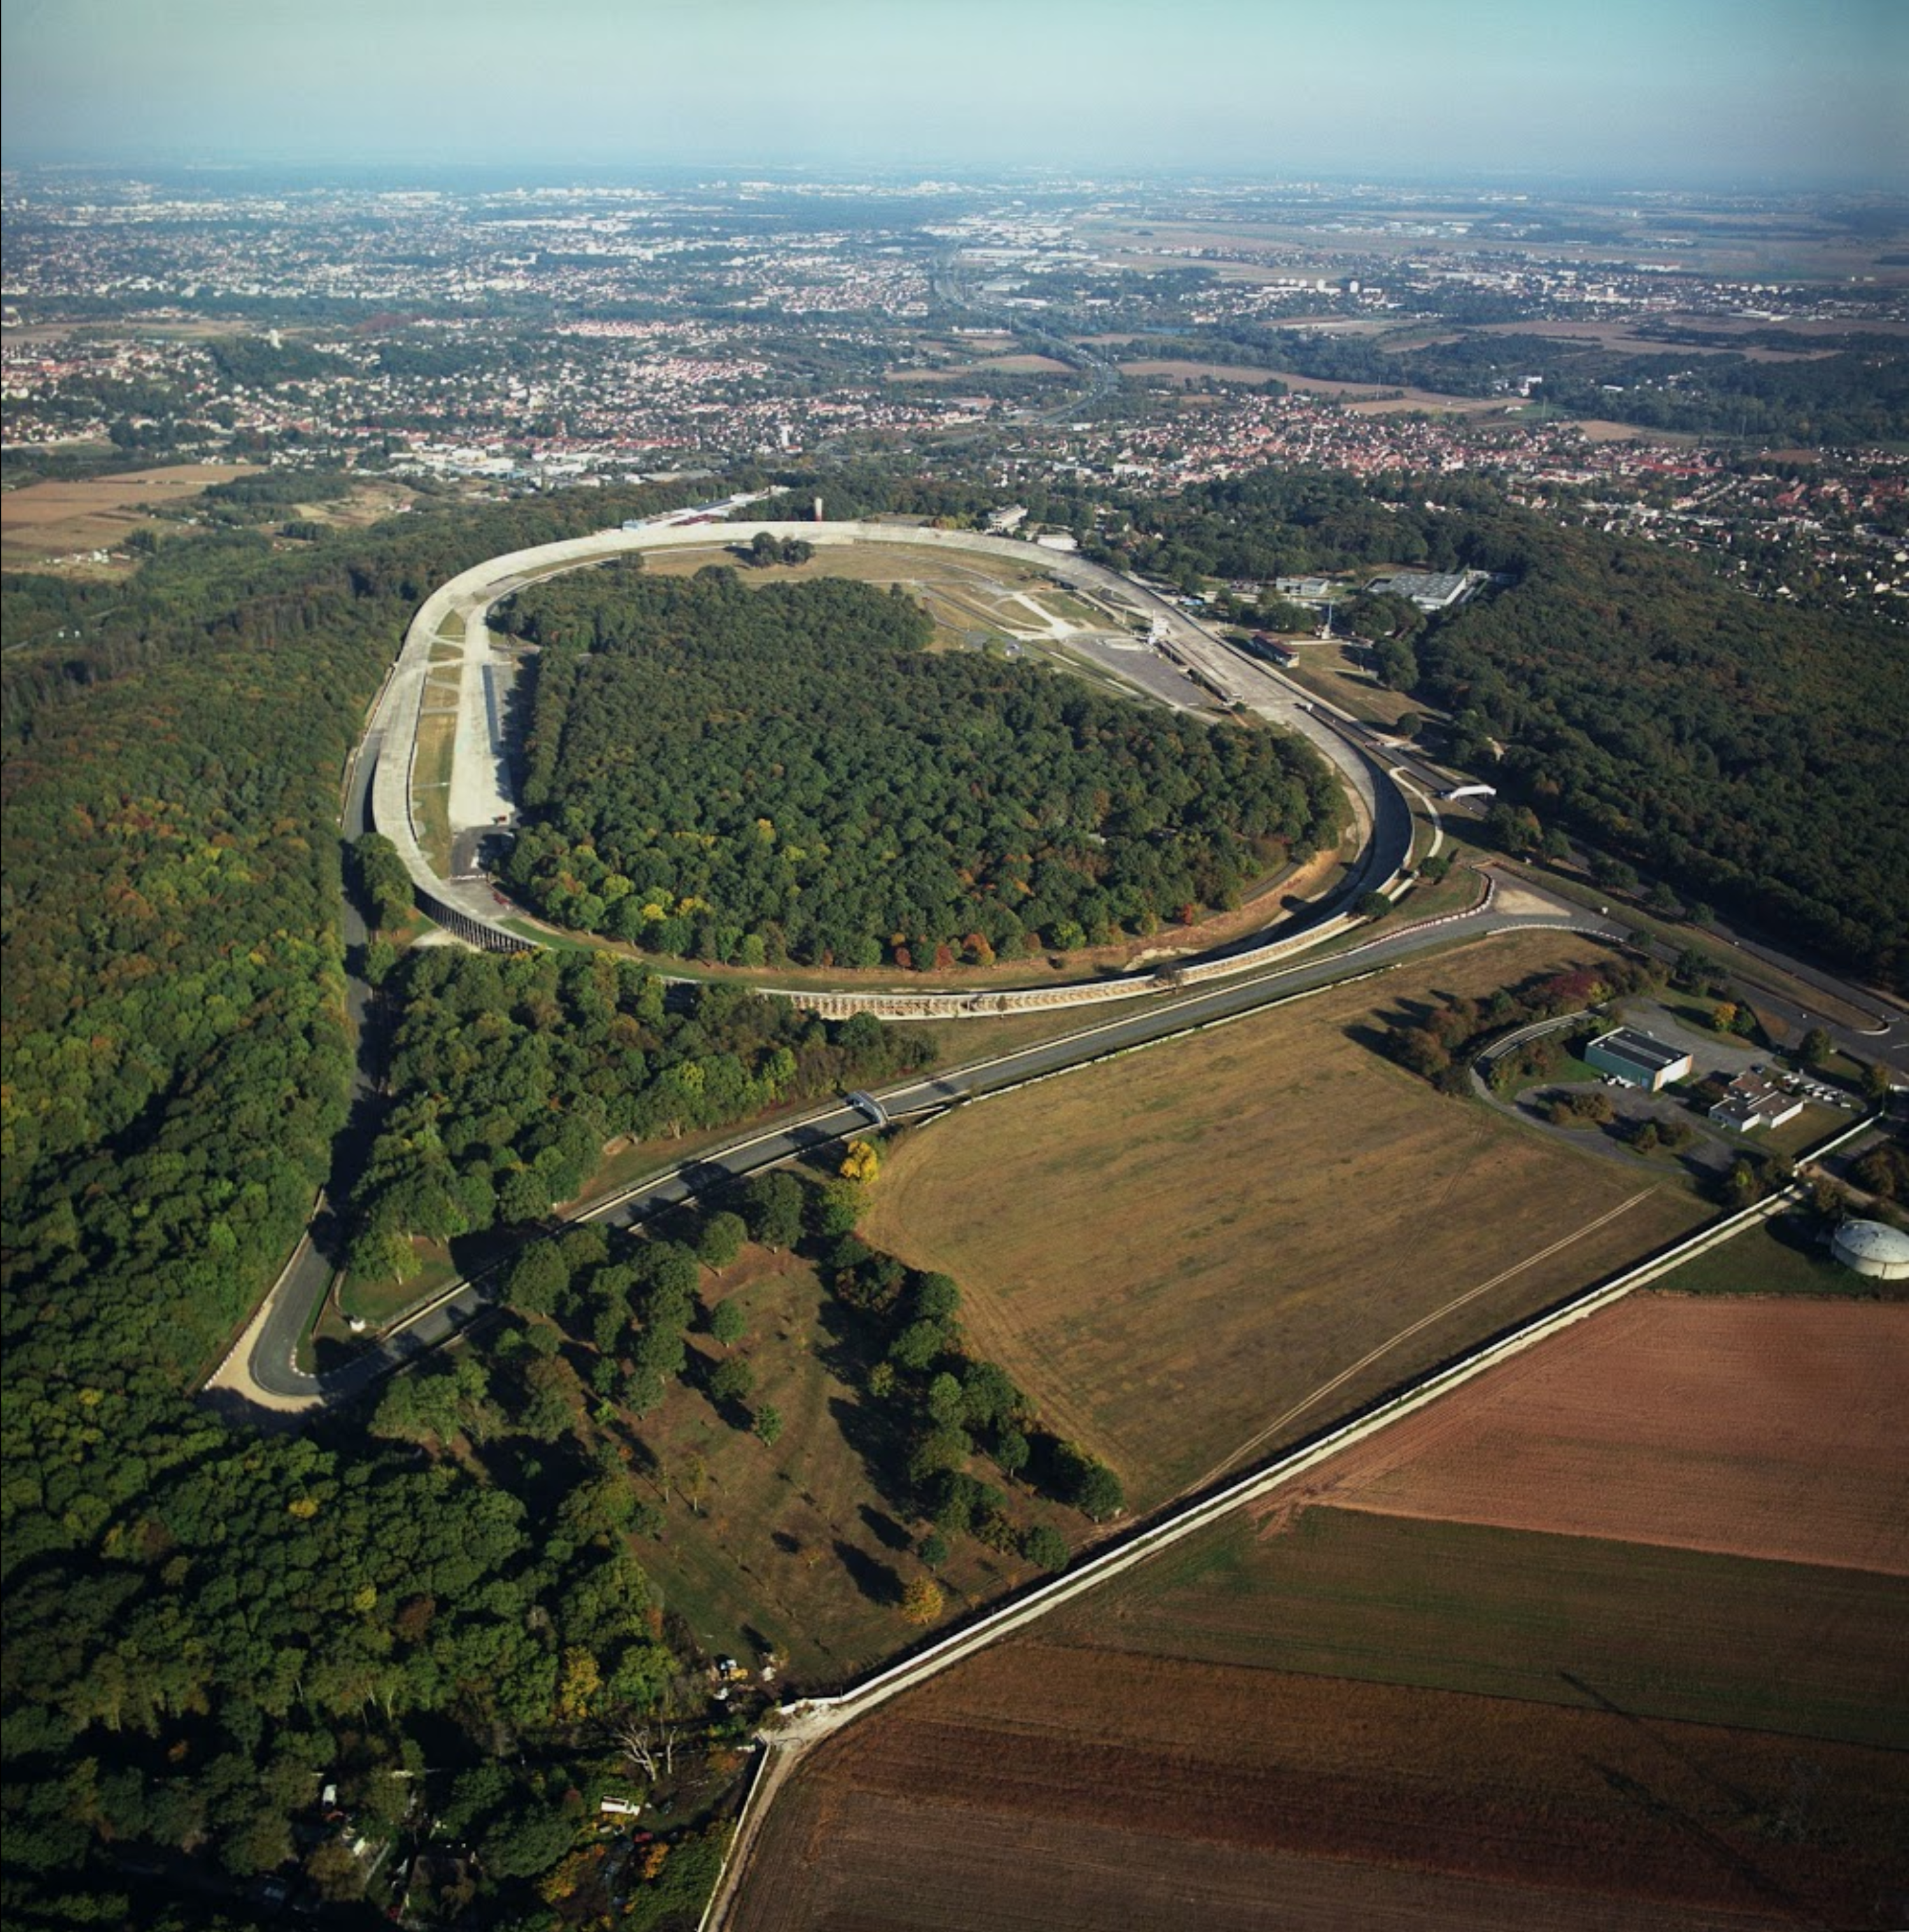 蒙特耶里賽車場（Autodrome de Linas-Montlhéry）於1924年落成，位處距離巴黎三十公里外的近郊地區。這個專業賽車場以一條2.5公里長的橢圓形賽道為主幹，由法國實業家、發明家亞歷山大‧朗布藍（Alexandre Lamblin）所設計。1925年7月法國大獎賽的第一場比賽就是在此進行的。儘管現在已不再被用作賽車場地，但這賽道曾經成就了不少車速世界紀錄，在車場落成初時，三位傳奇車手J.A Garfield、Robert Plessier和Paul Guillon駕駛着Renault雷諾40 CV NM在賽道狂飆二十四個小時，行駛總里程達4167公里，以超過173公里/小時的極速刷新世界紀錄，還同時創造了1000、2000英里以及2000、3000、4000公里的均速世界紀錄壯舉。